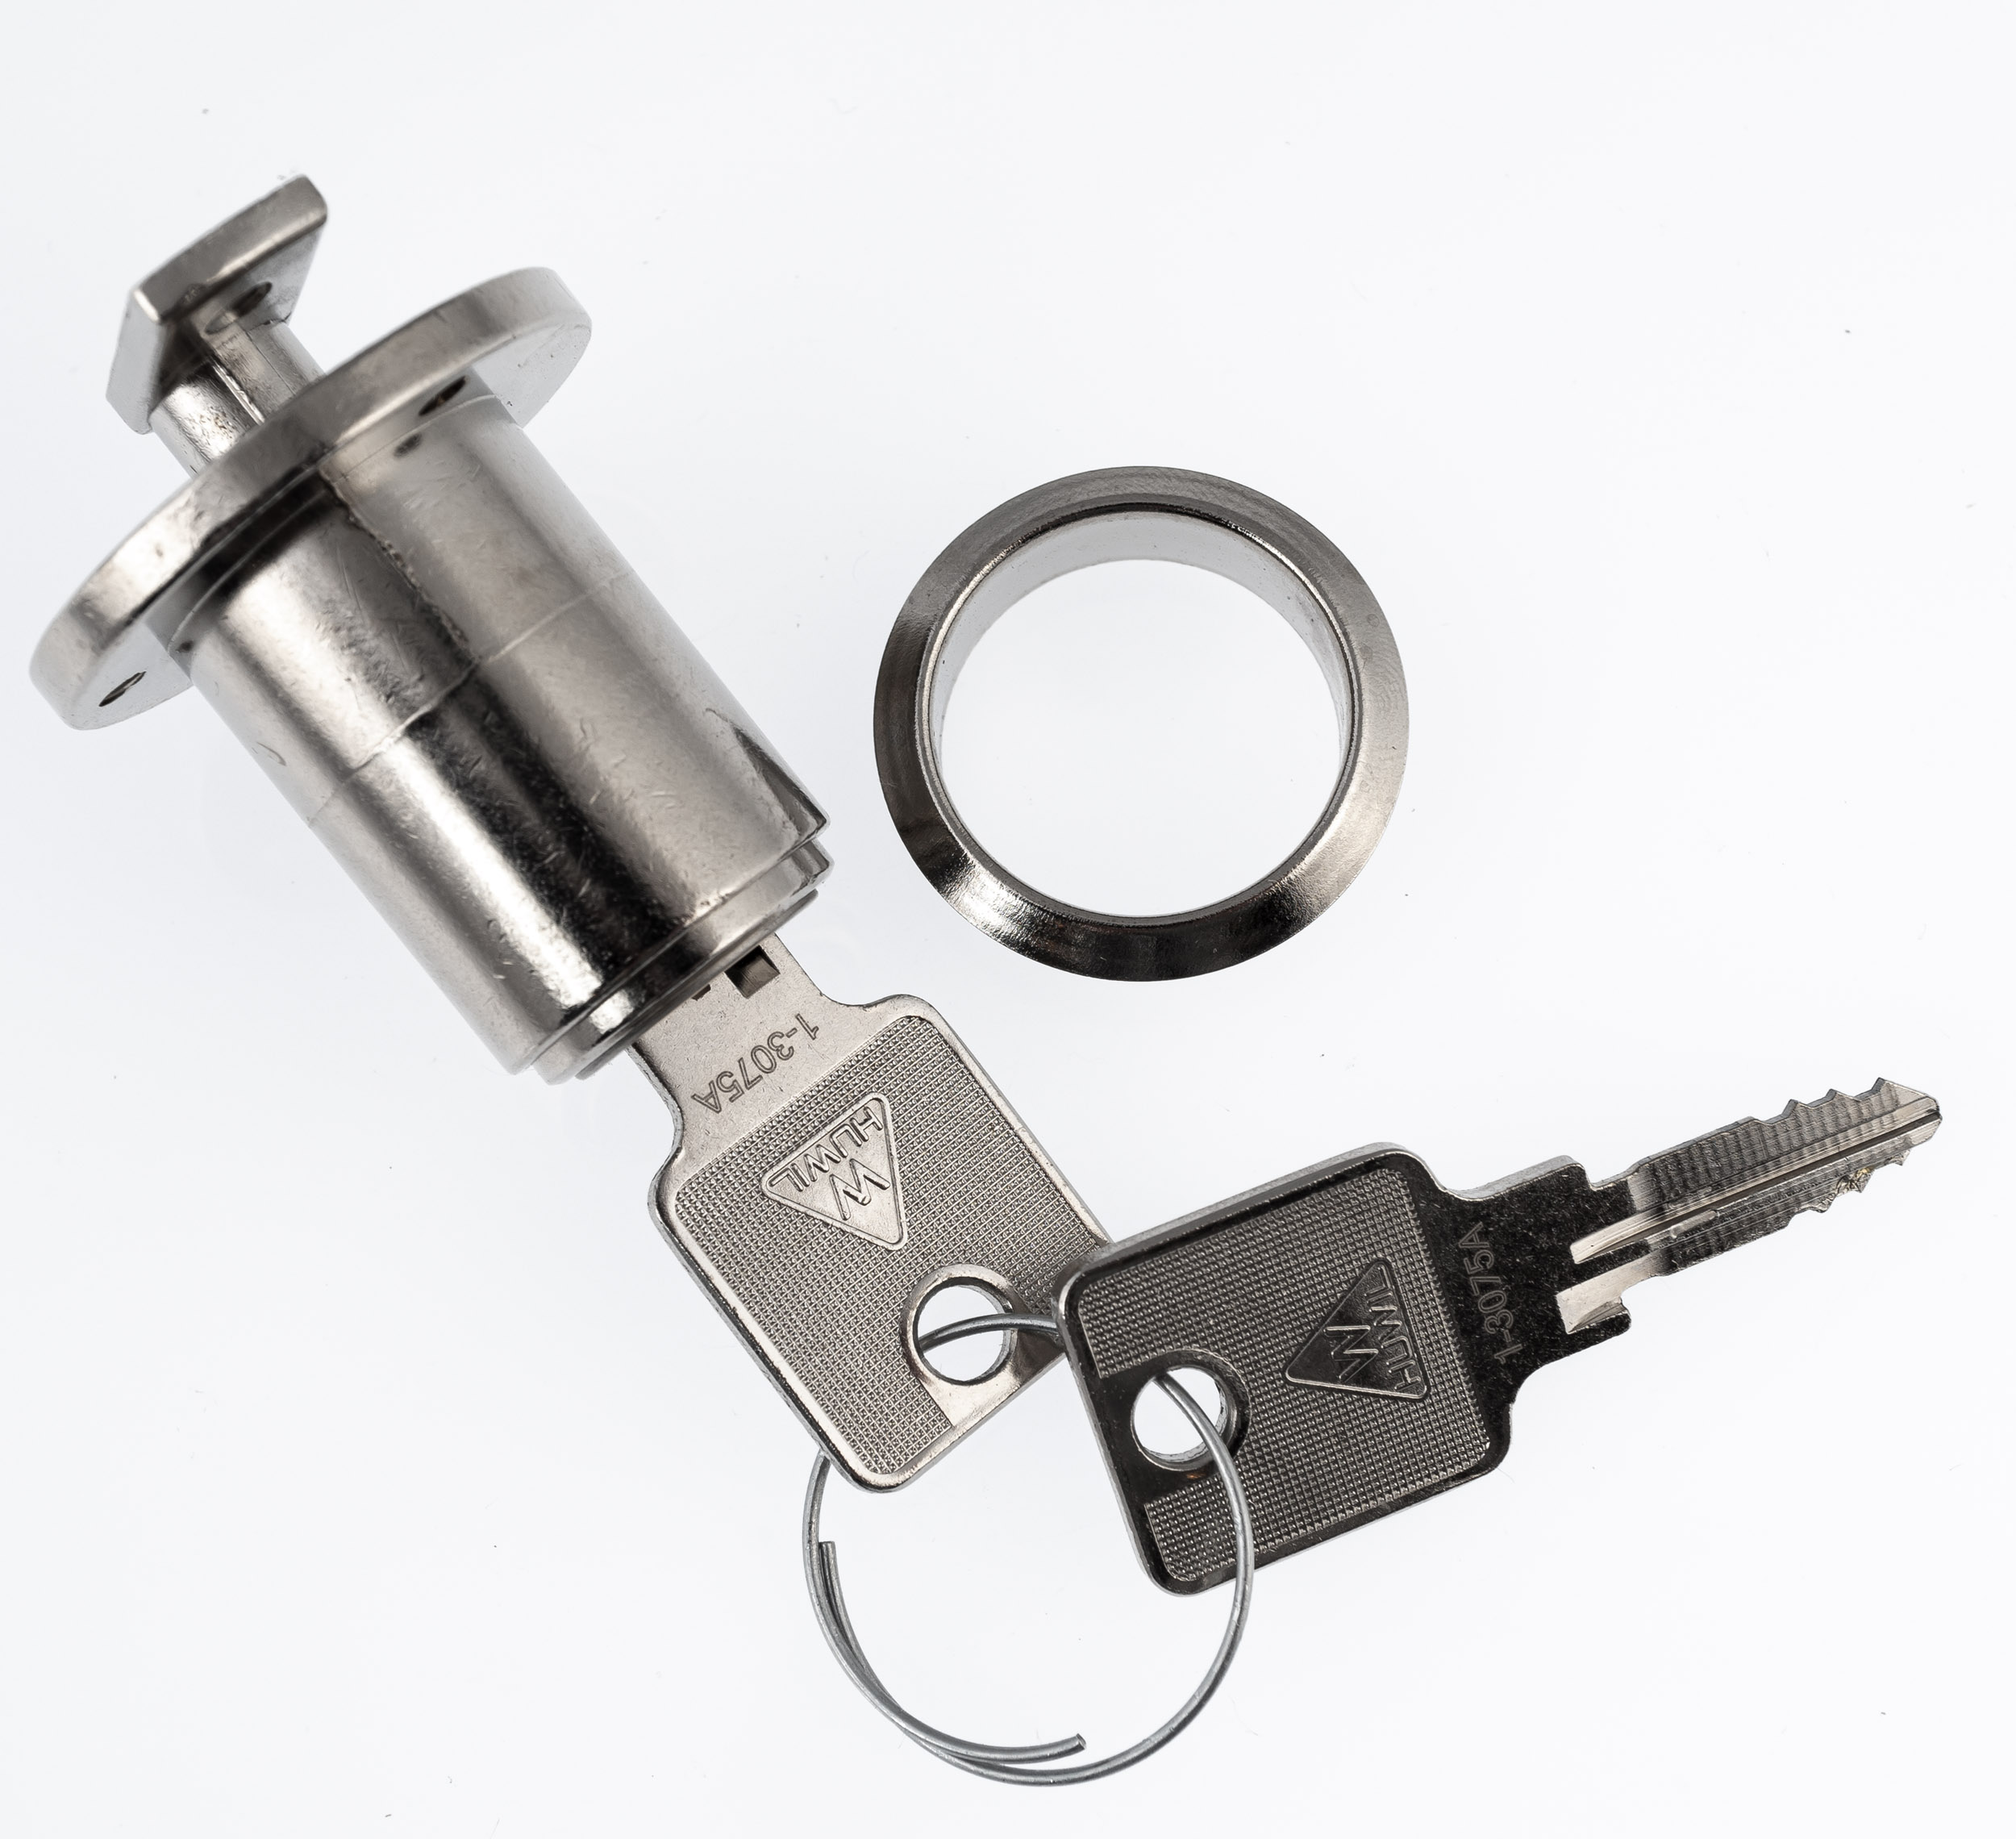 Schlüsselrohling Lenkschloss für Gepäckfach, Lenkschloß, Seitenhaube H 2 mm  Note 1 - originalgetreue Restaurierung